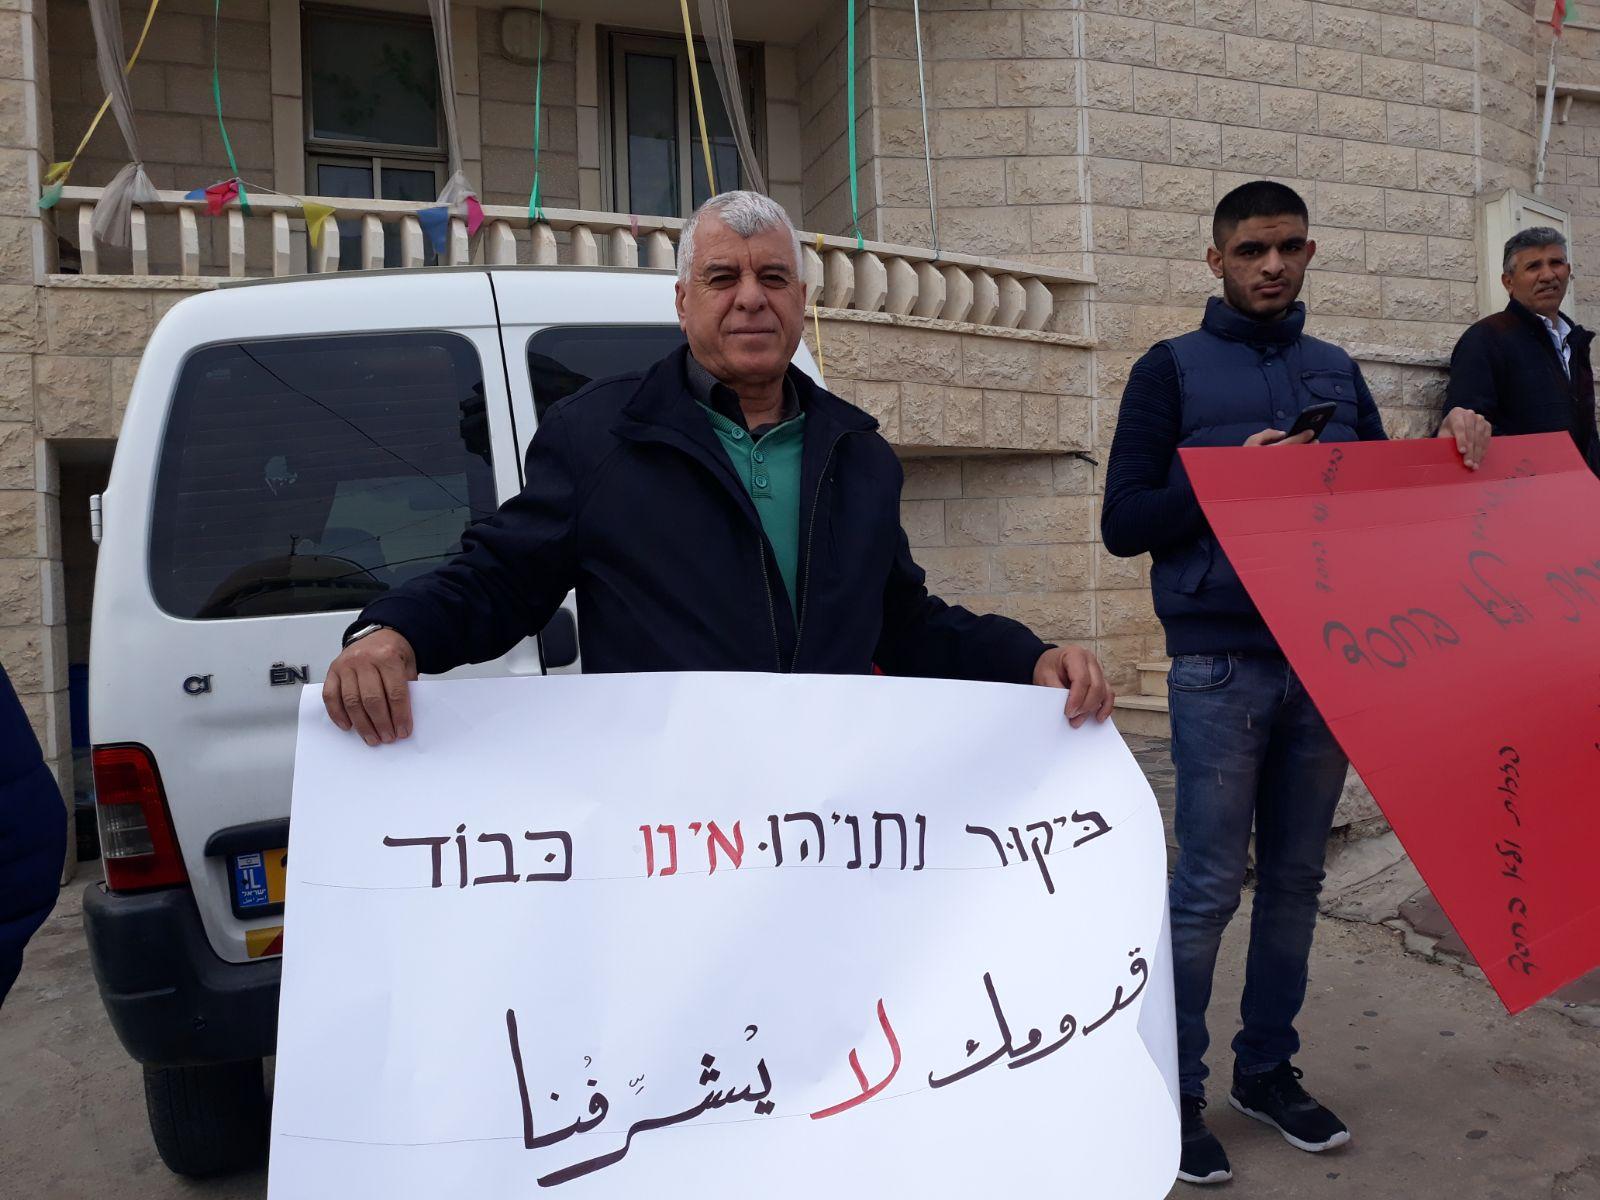  بركة: يتحتّم على فلسطينيي الداخل استقبال نتنياهو   بالصرامي على وجهه   2017122812192534